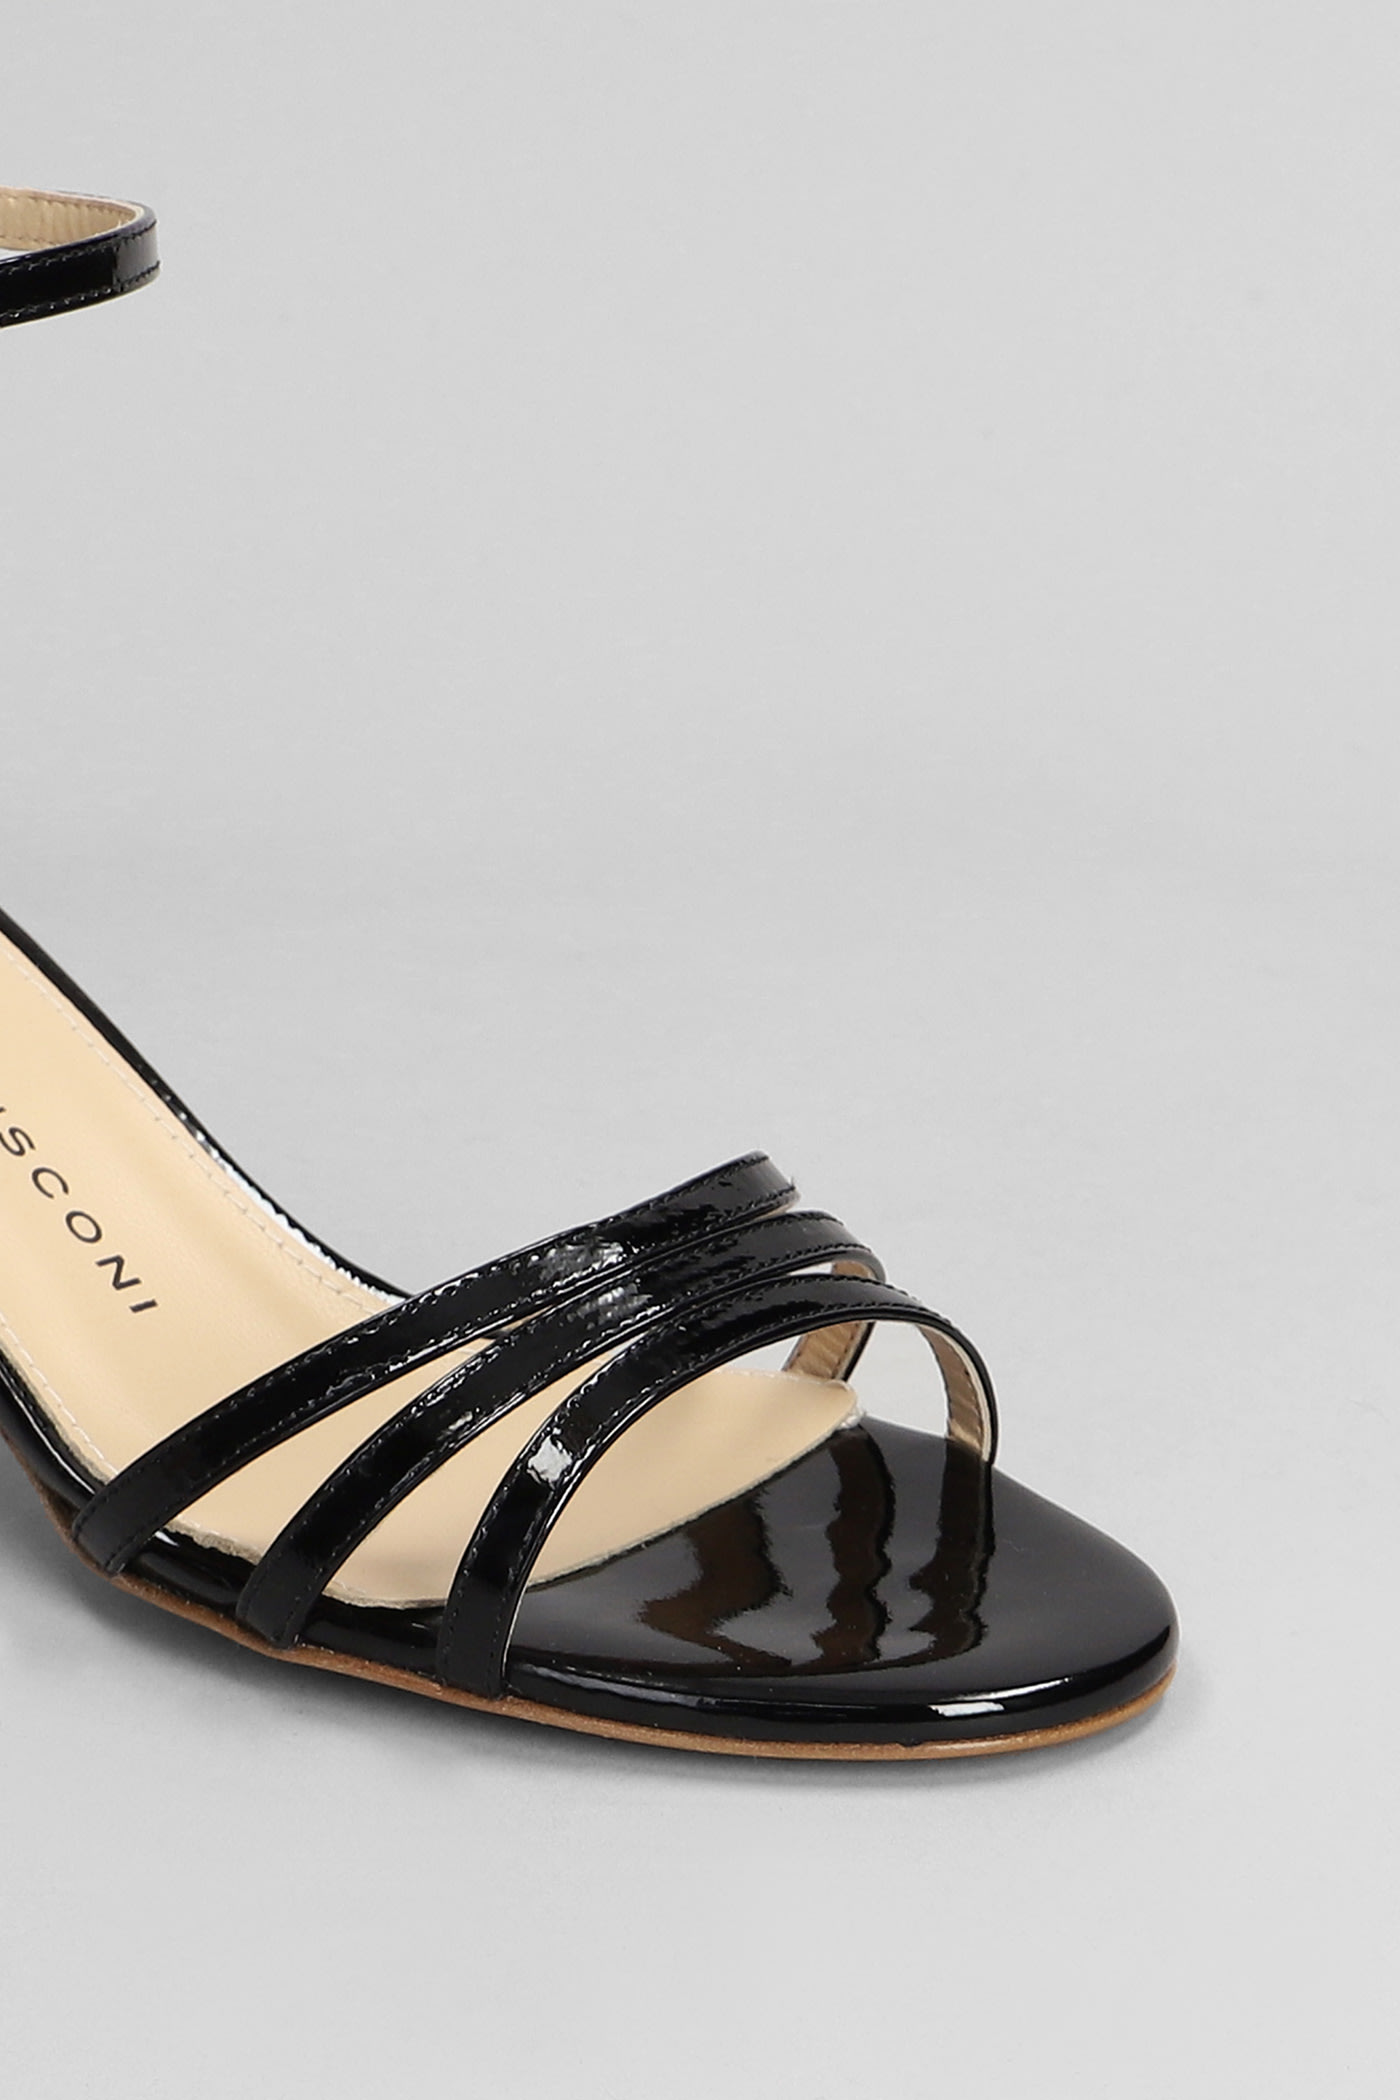 Shop Fabio Rusconi Sandals In Black Patent Leather